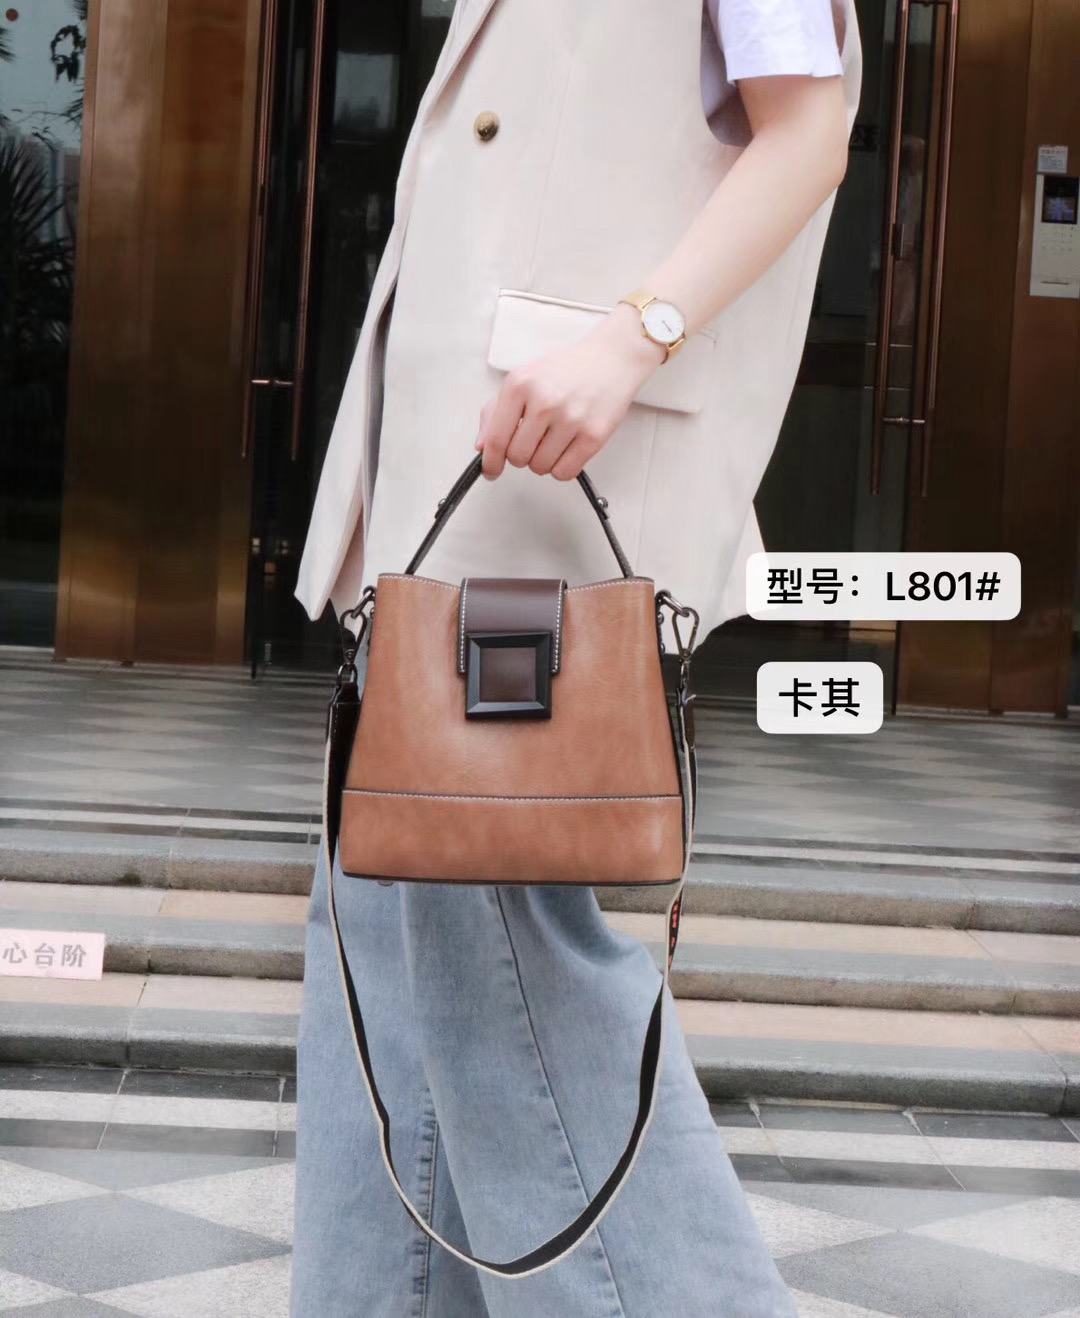 特利瓦萨琪2020女包韩版时尚手提包休闲百搭斜挎单肩产品图